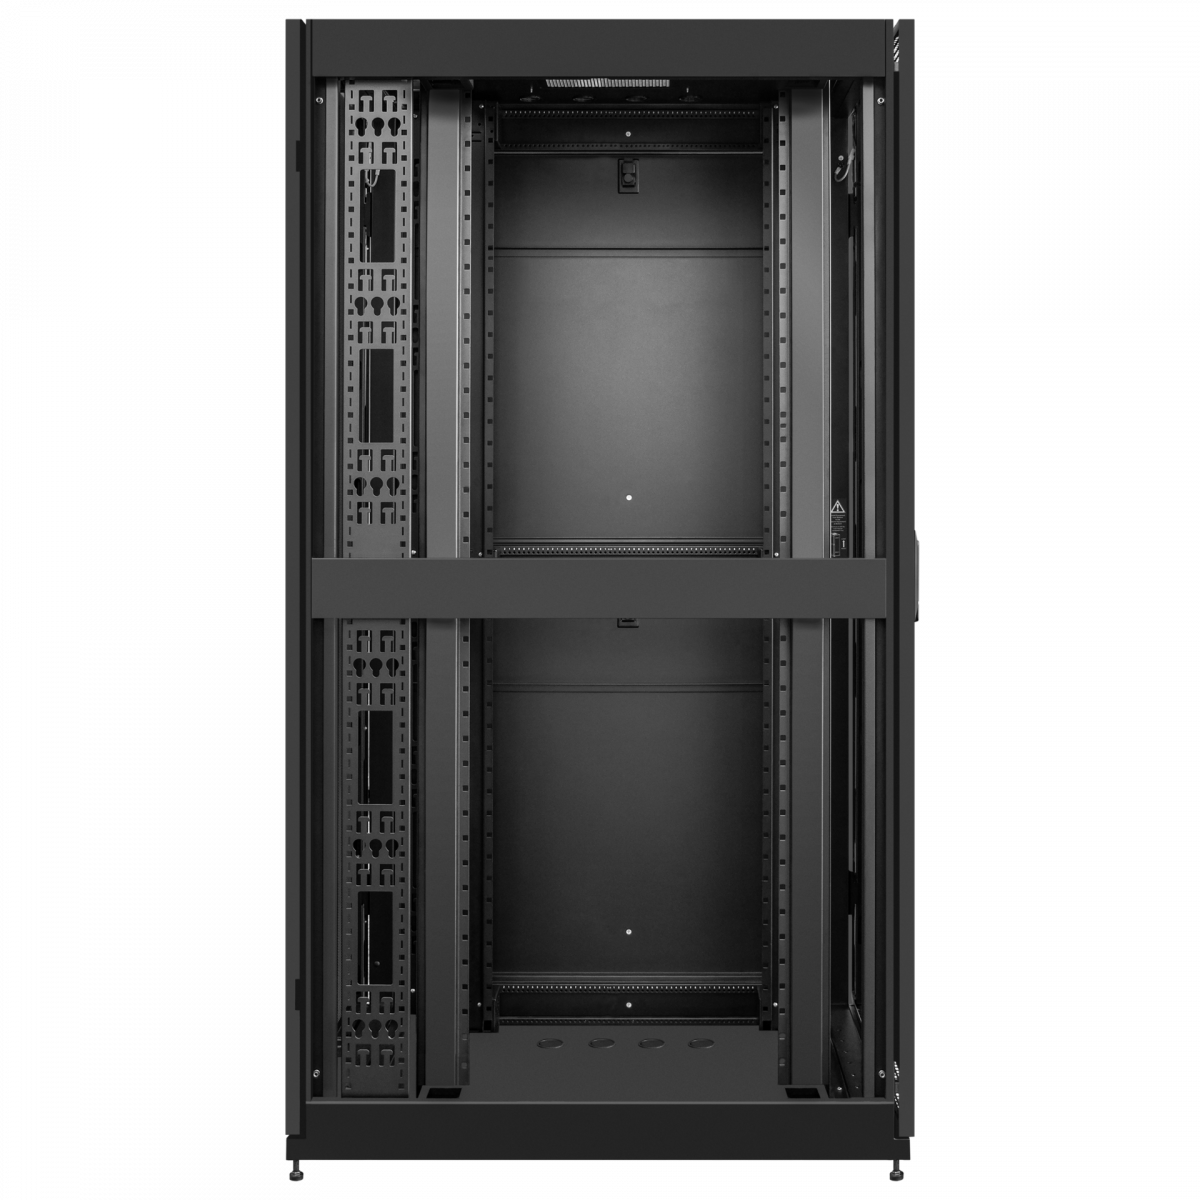 Напольный серверный шкаф Metal Box 42U 800х800